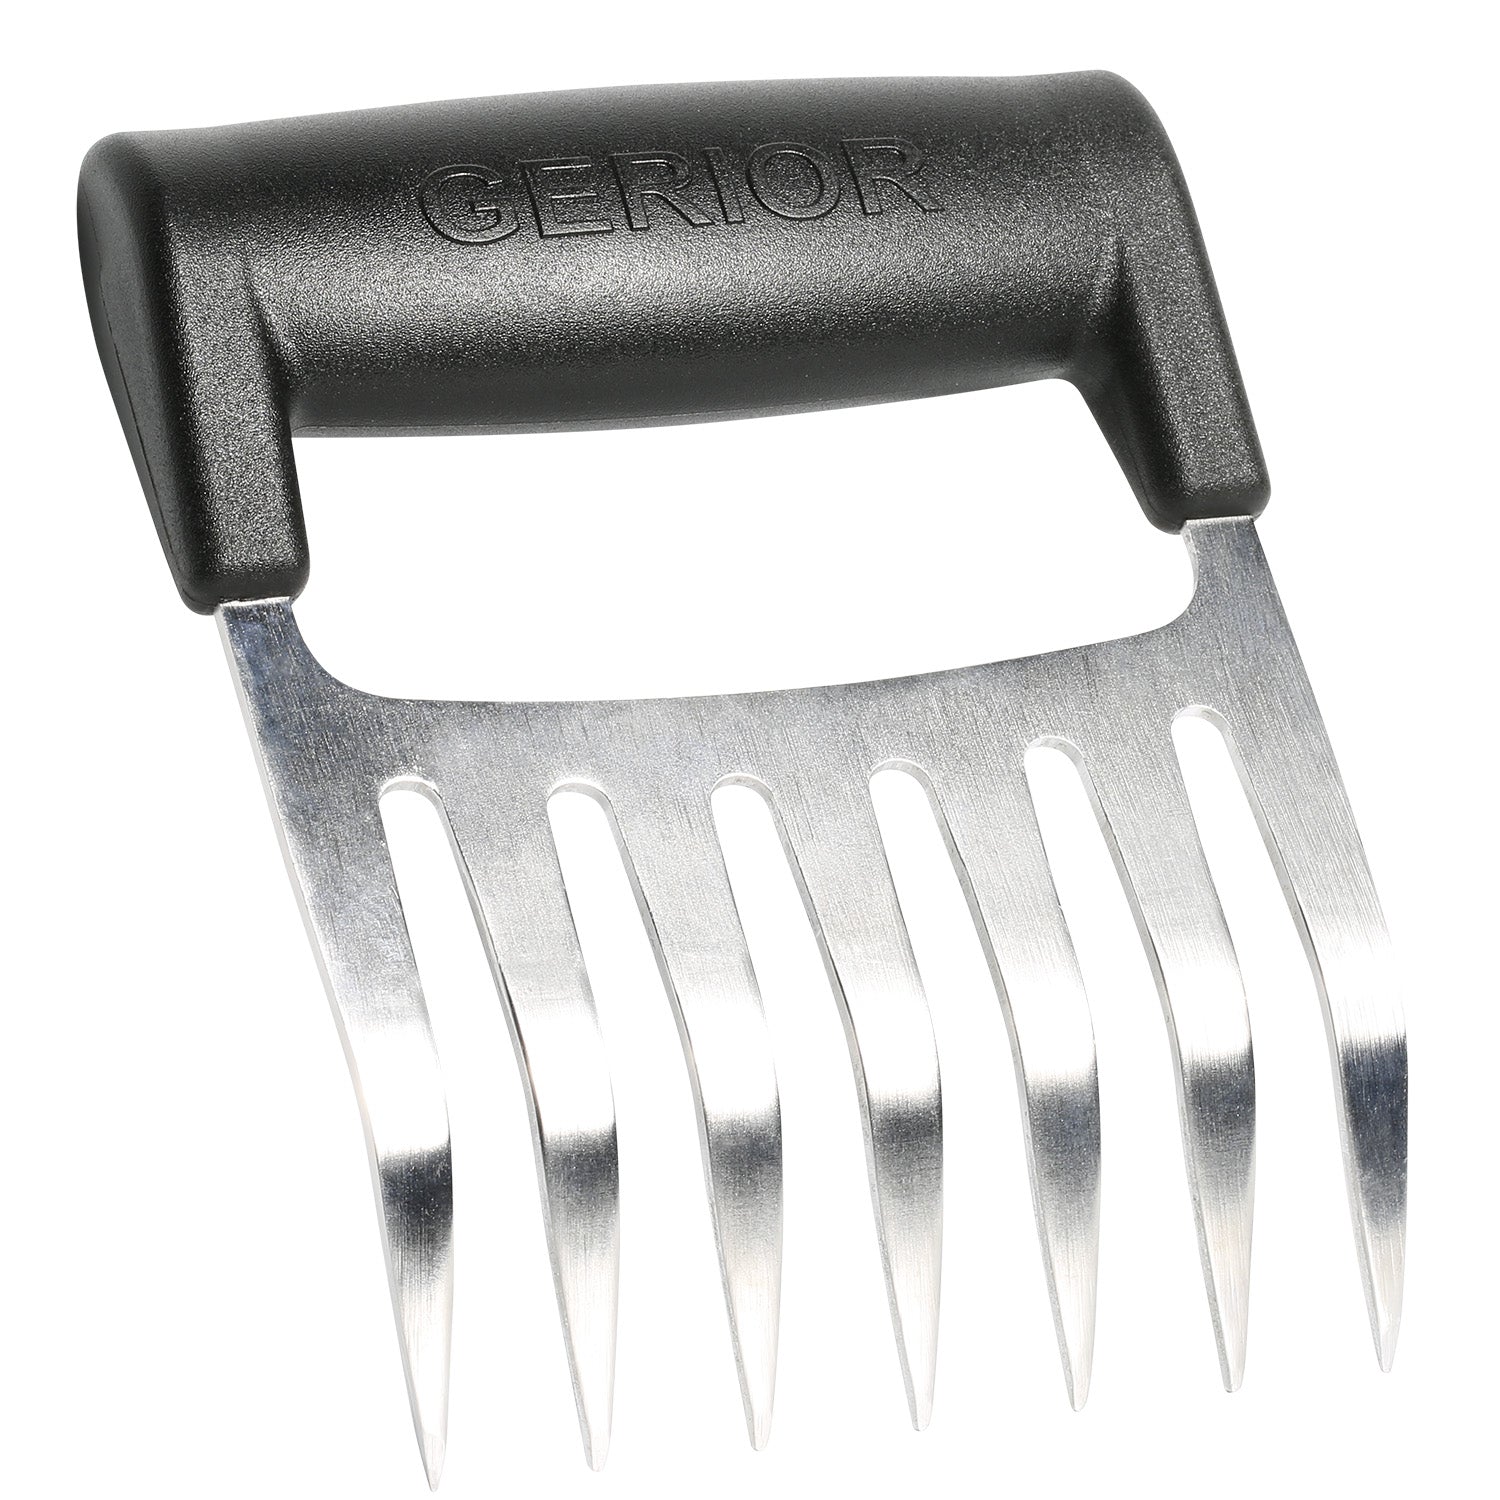 Eternal Meat Shredding Claws - Plastic or Stainless Steel Metal Metallic